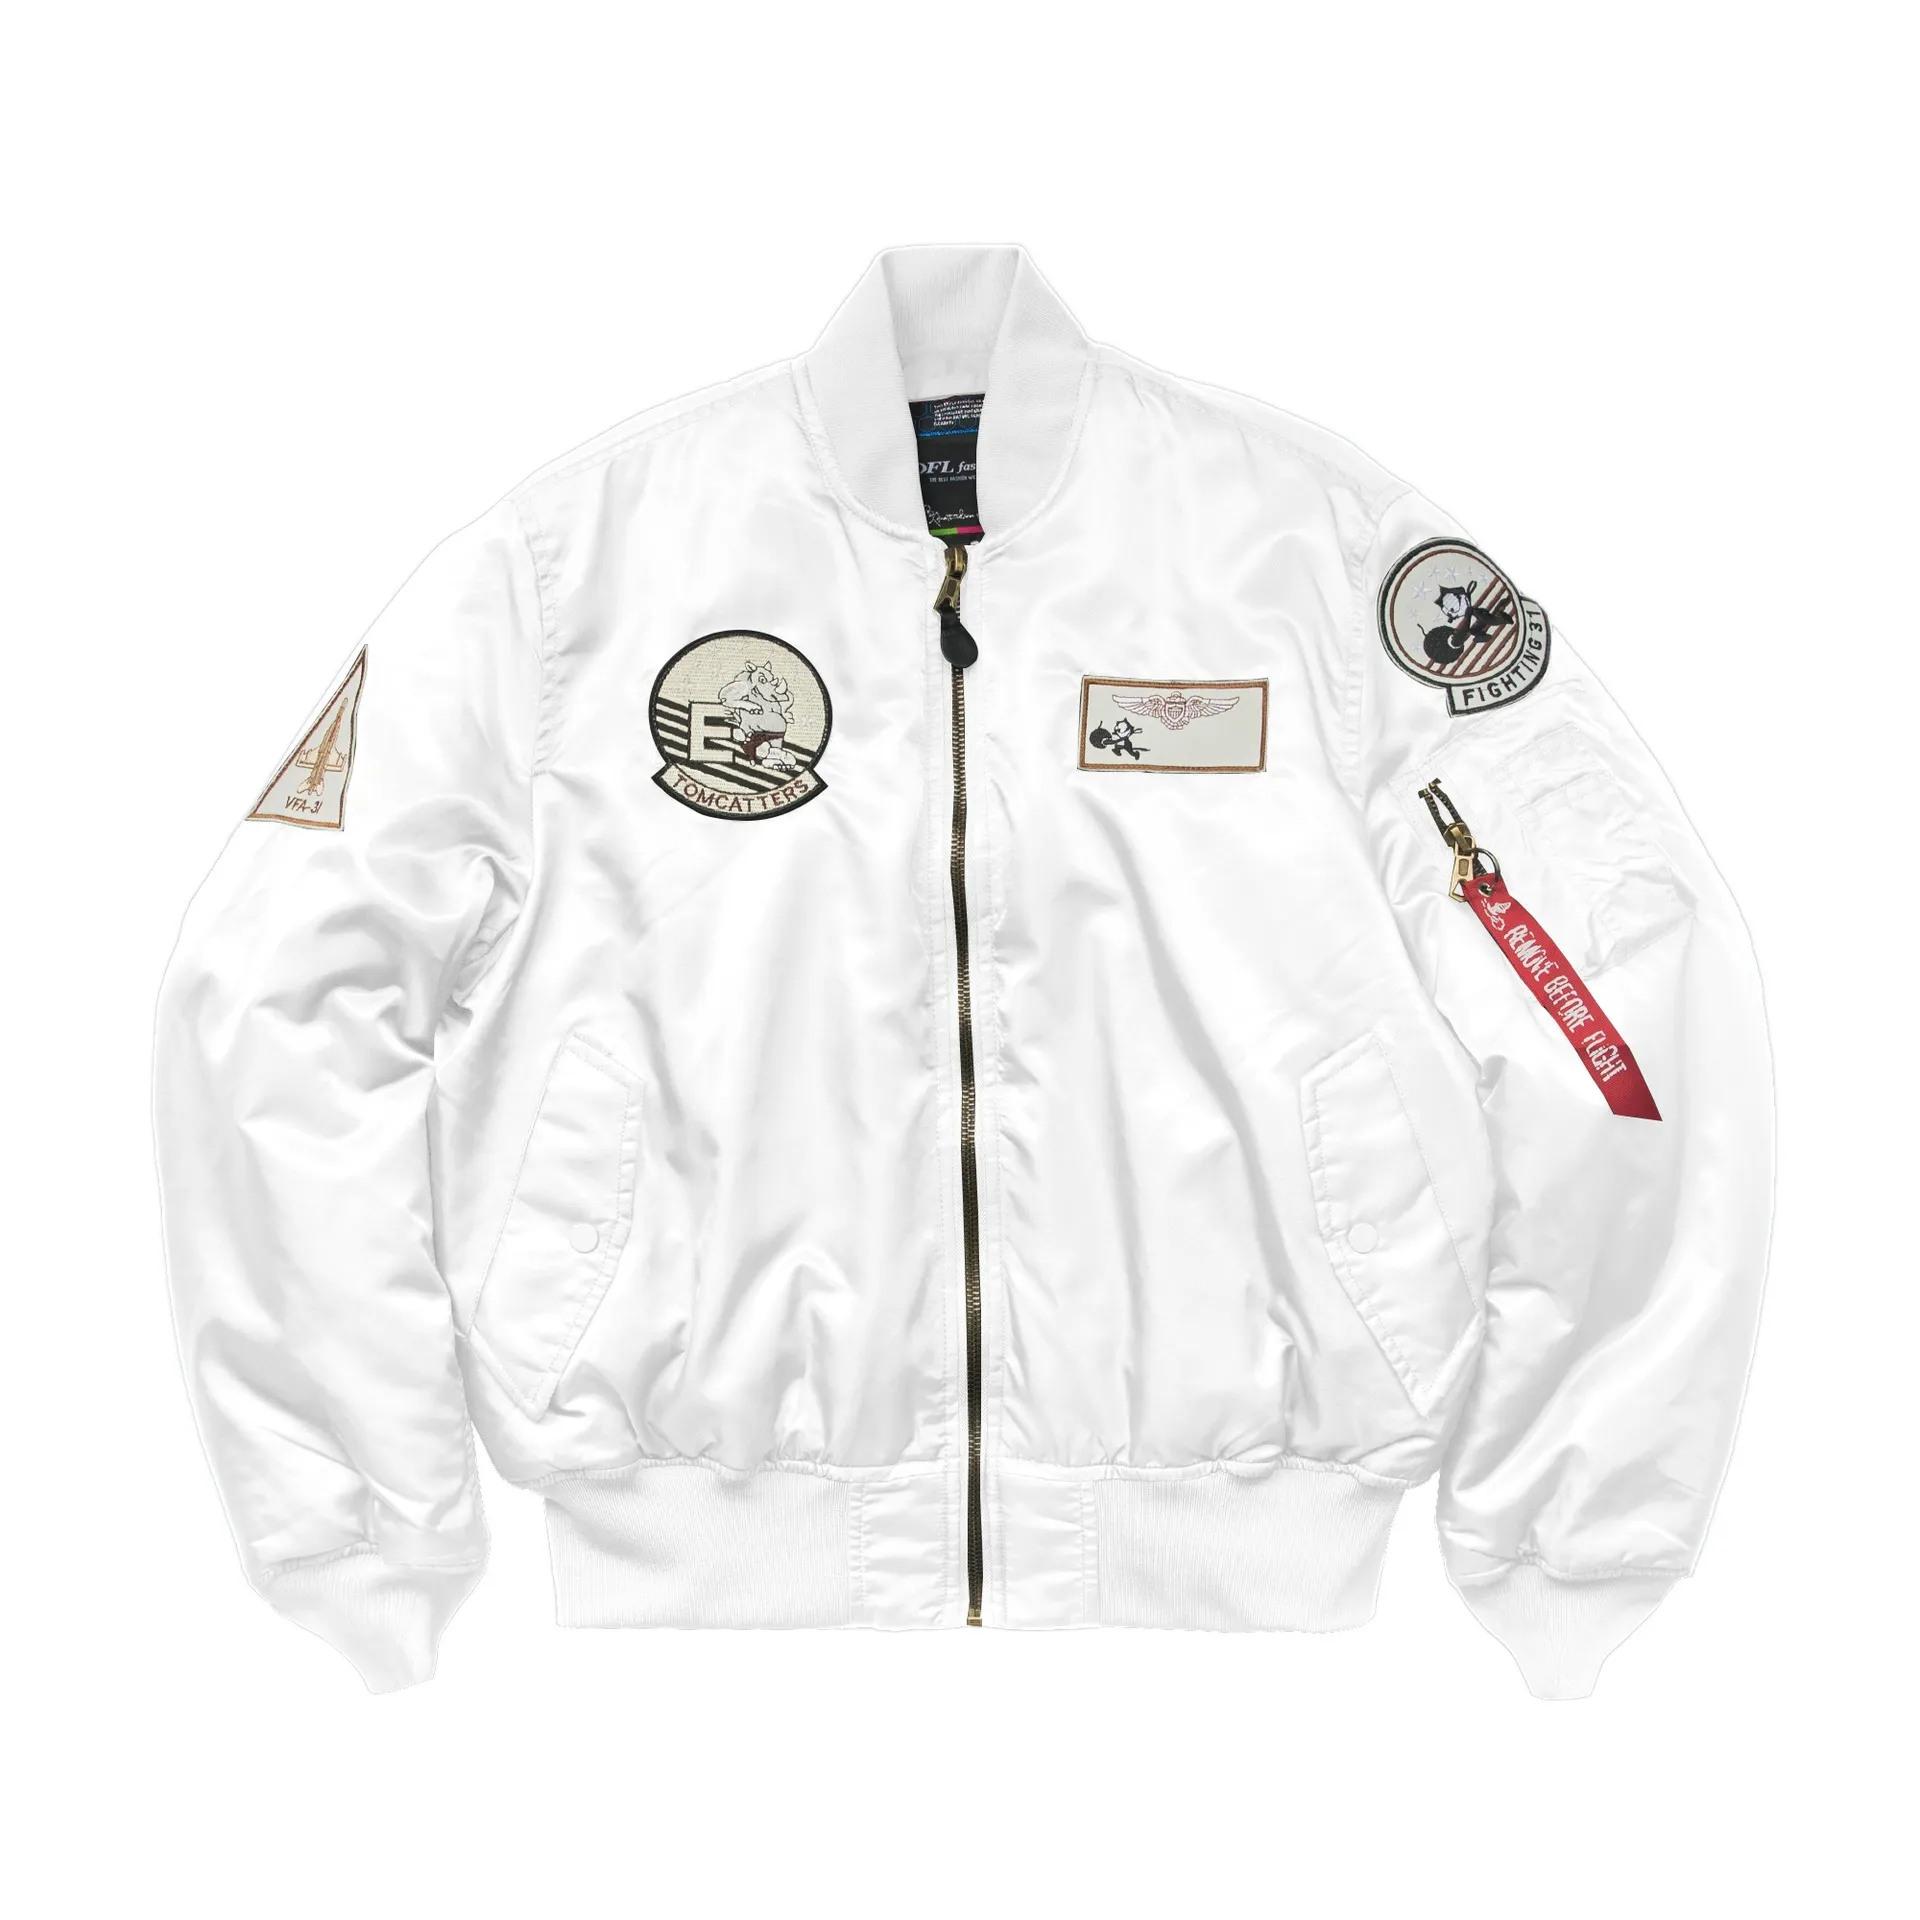 Nieuwe hoogwaardige retro heren/damesluchtmacht pilot epauletten n overall jas baseball jersey geborduurd MA-1 jas jassen